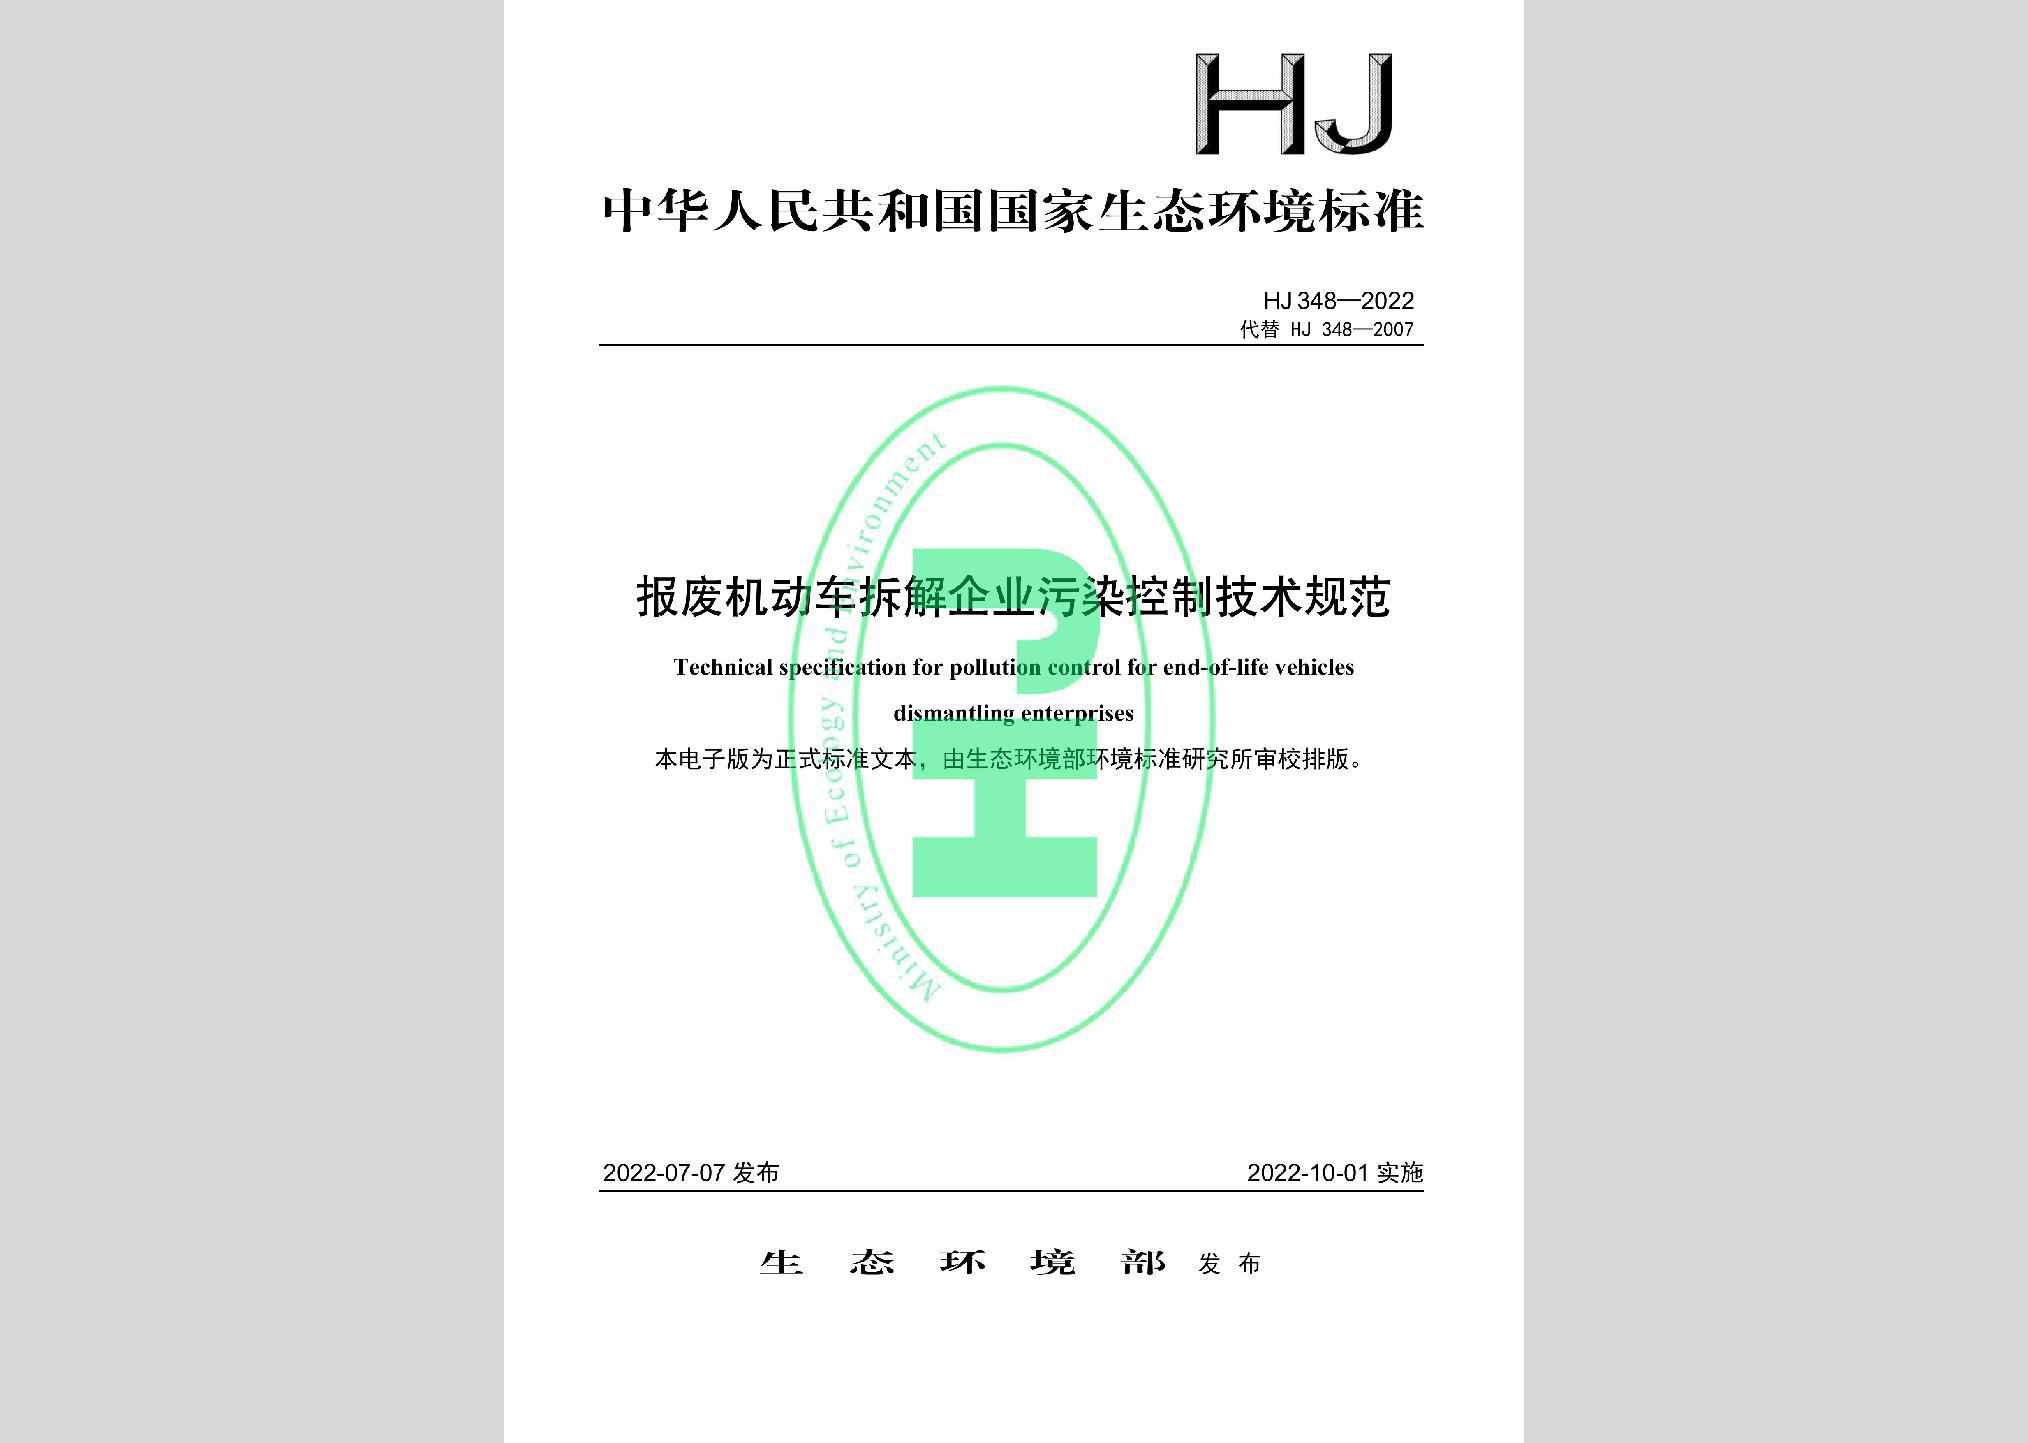 HJ348-2022：报废机动车拆解企业污染控制技术规范